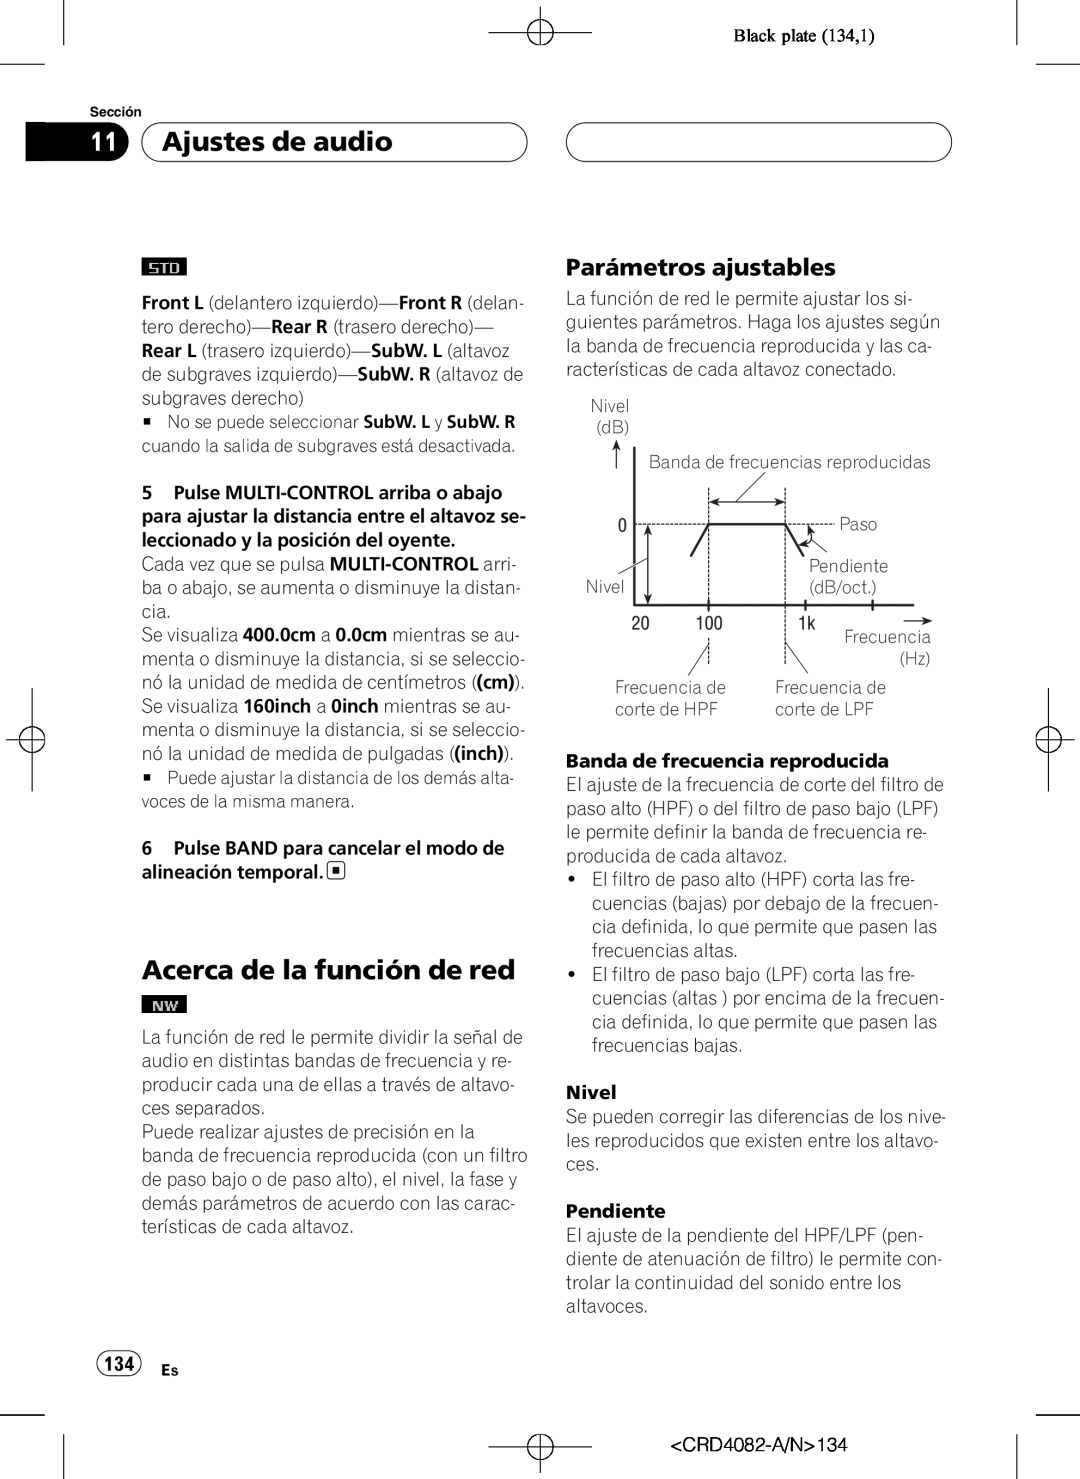 Pioneer DEH-P80RS operation manual Acerca de la función de red, Parámetros ajustables, 134 Es, Ajustes de audio 